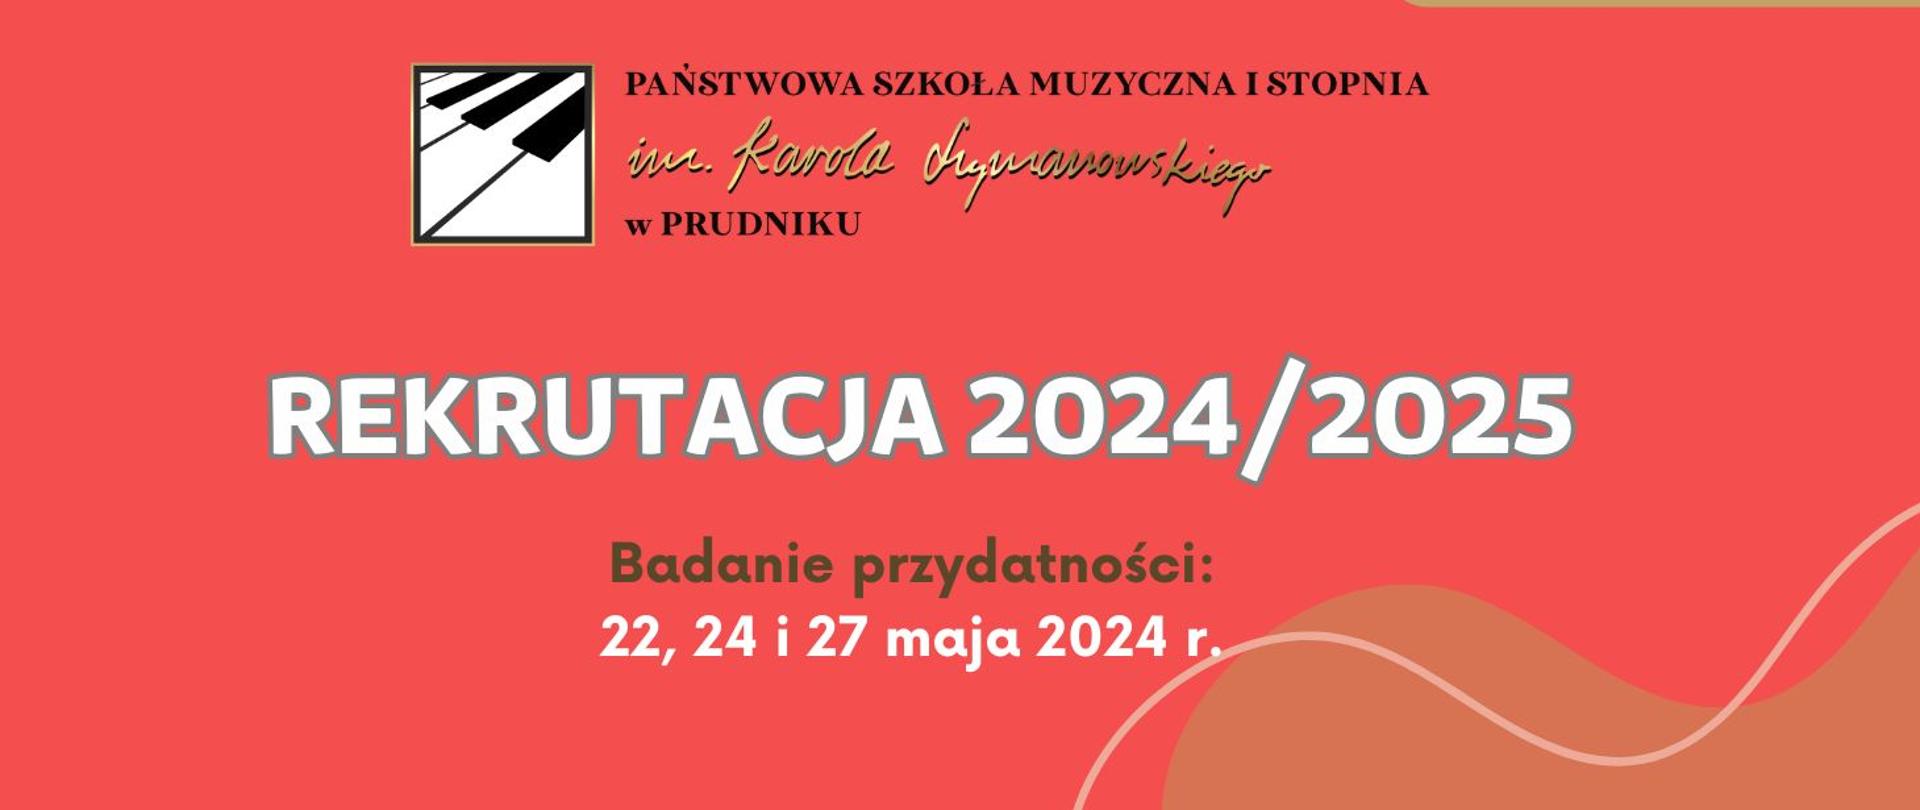 Baner z informacją o rekrutacji do szkoły muzycznej. Na czerwonym tle napis "Rekrutacja 2024/2025. Badanie przydatności 22, 24 i 27 maja 2024 r." W górnej części na środku logo szkoły.